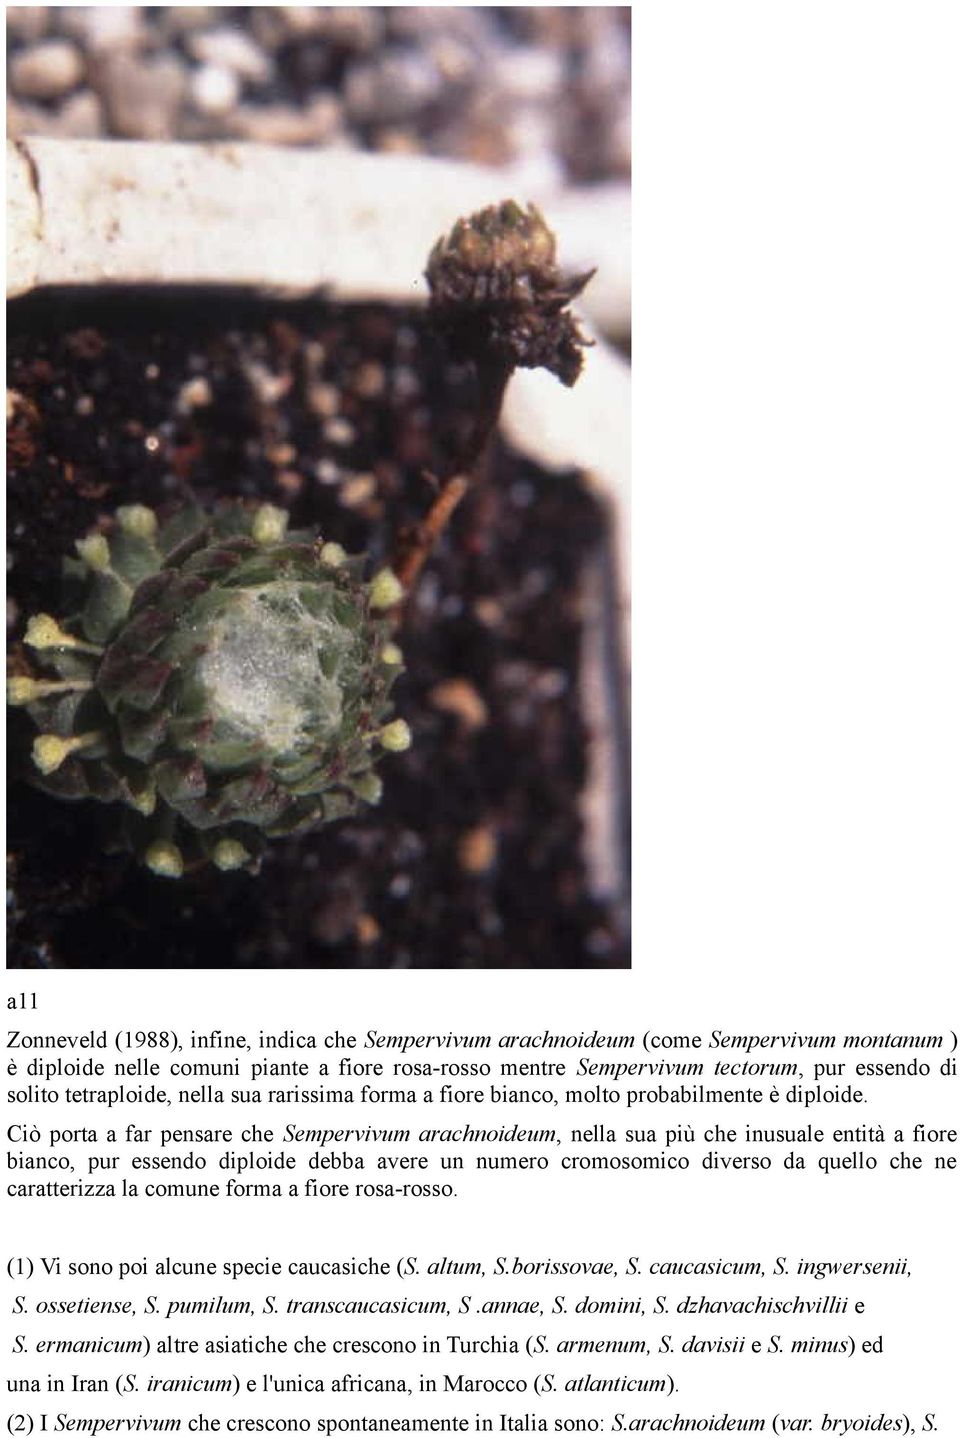 Ciò porta a far pensare che Sempervivum arachnoideum, nella sua più che inusuale entità a fiore bianco, pur essendo diploide debba avere un numero cromosomico diverso da quello che ne caratterizza la